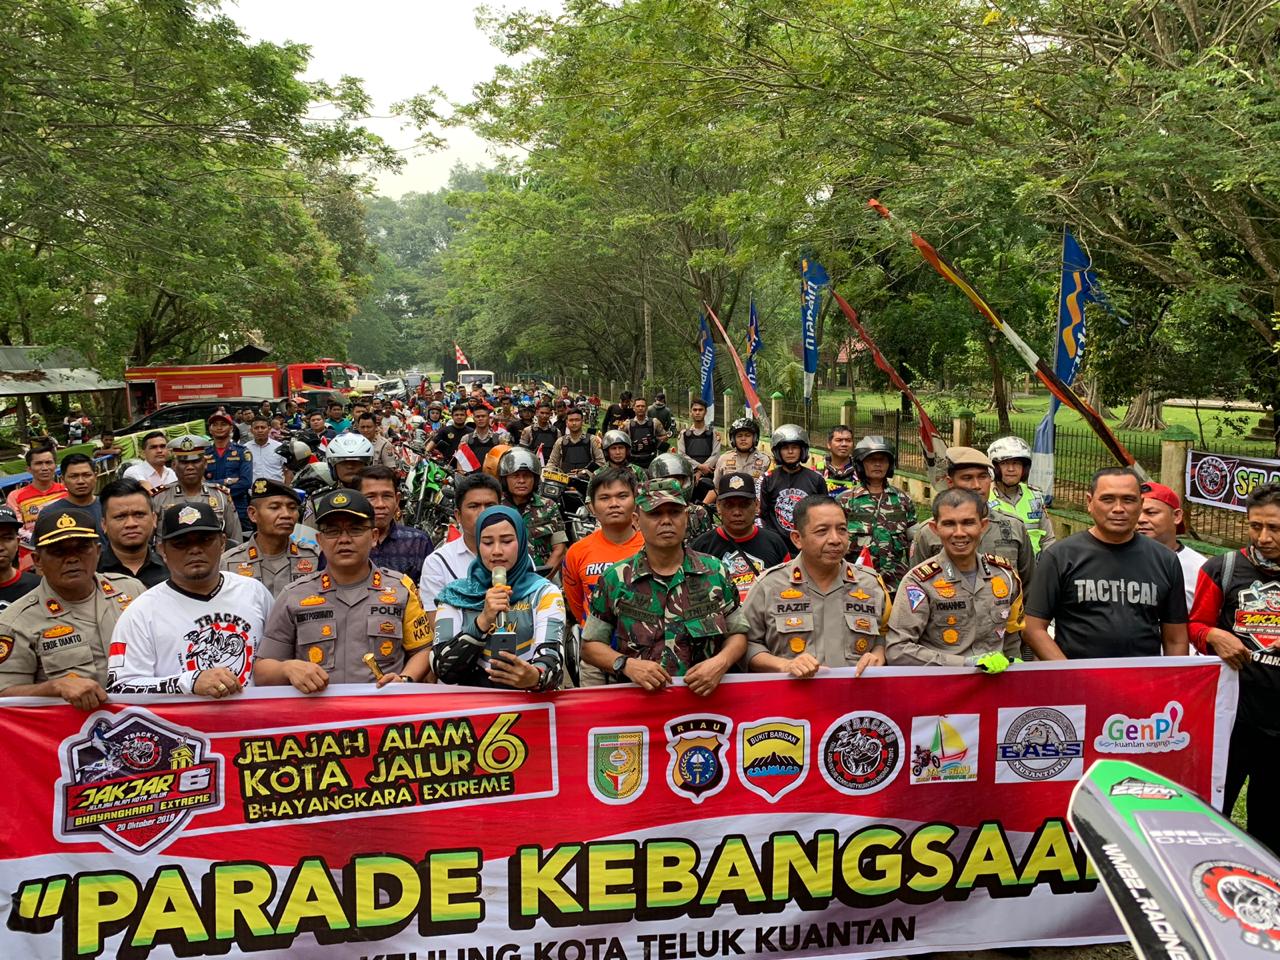 Sebanyak 500 Peserta Parade Ikut Serta Menyemarakkan Parade Kebangsaan Di Hutan Kota Teluk Kuantan.